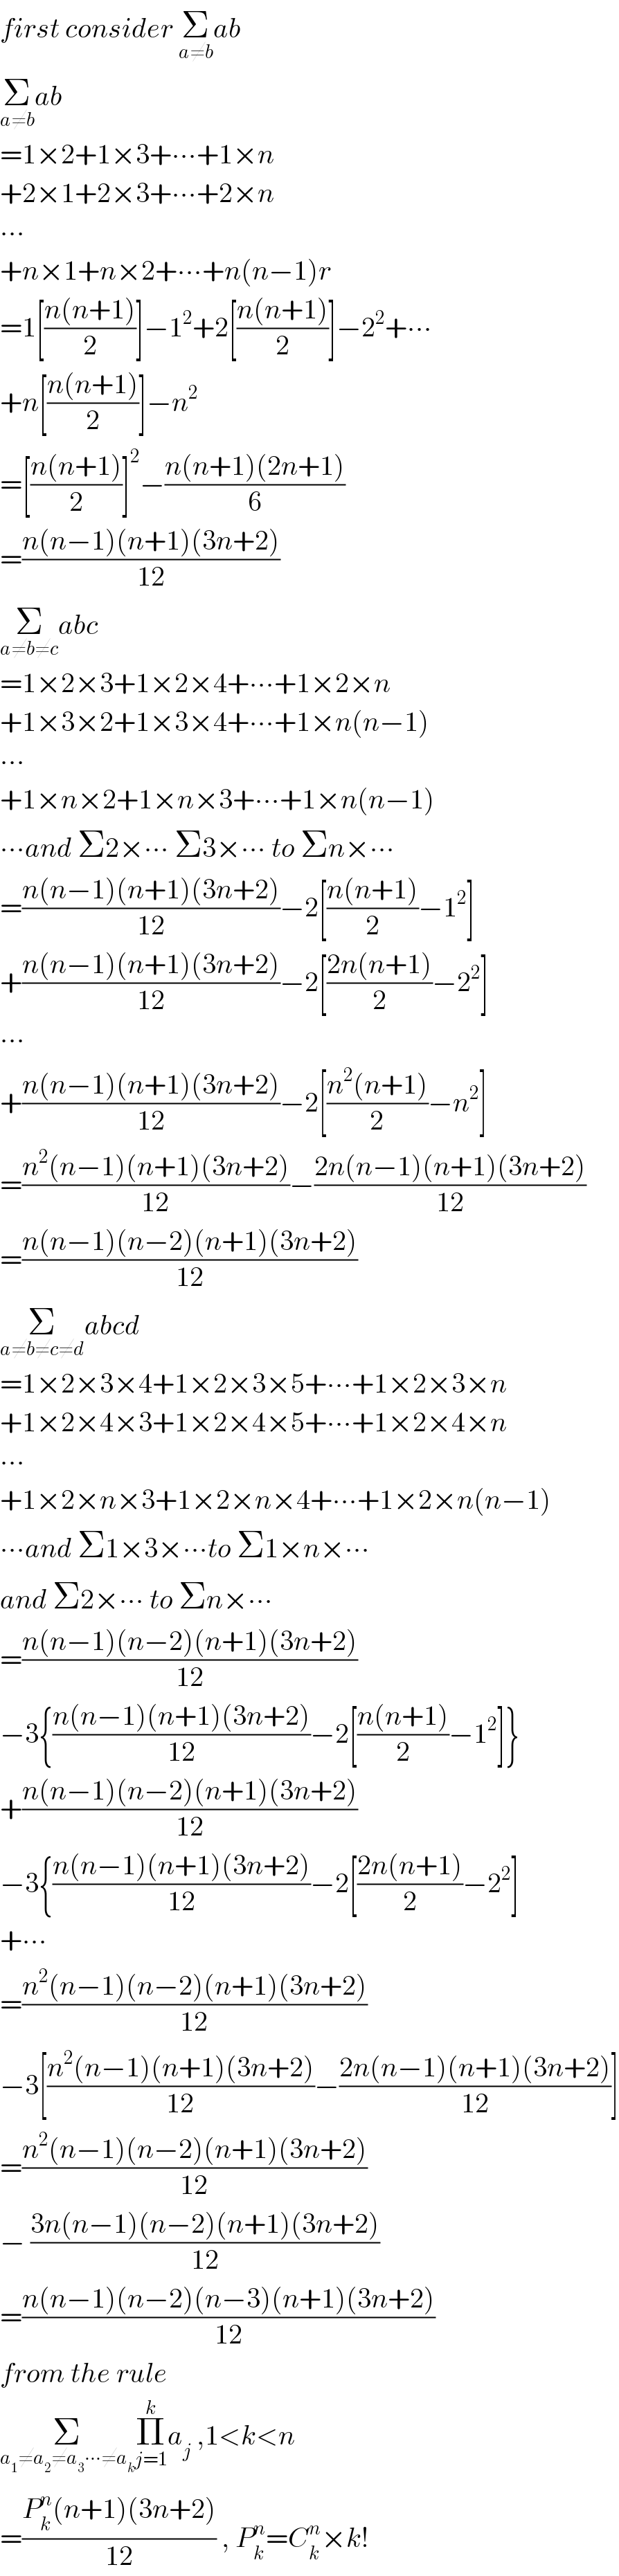 first consider Σ_(a≠b) ab  Σ_(a≠b) ab  =1×2+1×3+∙∙∙+1×n  +2×1+2×3+∙∙∙+2×n  ∙∙∙  +n×1+n×2+∙∙∙+n(n−1)r  =1[((n(n+1))/2)]−1^2 +2[((n(n+1))/2)]−2^2 +∙∙∙  +n[((n(n+1))/2)]−n^2   =[((n(n+1))/2)]^2 −((n(n+1)(2n+1))/6)  =((n(n−1)(n+1)(3n+2))/(12))  Σ_(a≠b≠c) abc  =1×2×3+1×2×4+∙∙∙+1×2×n  +1×3×2+1×3×4+∙∙∙+1×n(n−1)  ∙∙∙  +1×n×2+1×n×3+∙∙∙+1×n(n−1)  ∙∙∙and Σ2×∙∙∙ Σ3×∙∙∙ to Σn×∙∙∙  =((n(n−1)(n+1)(3n+2))/(12))−2[((n(n+1))/2)−1^2 ]  +((n(n−1)(n+1)(3n+2))/(12))−2[((2n(n+1))/2)−2^2 ]  ∙∙∙  +((n(n−1)(n+1)(3n+2))/(12))−2[((n^2 (n+1))/2)−n^2 ]  =((n^2 (n−1)(n+1)(3n+2))/(12))−((2n(n−1)(n+1)(3n+2))/(12))  =((n(n−1)(n−2)(n+1)(3n+2))/(12))  Σ_(a≠b≠c≠d) abcd  =1×2×3×4+1×2×3×5+∙∙∙+1×2×3×n  +1×2×4×3+1×2×4×5+∙∙∙+1×2×4×n  ∙∙∙  +1×2×n×3+1×2×n×4+∙∙∙+1×2×n(n−1)  ∙∙∙and Σ1×3×∙∙∙to Σ1×n×∙∙∙  and Σ2×∙∙∙ to Σn×∙∙∙  =((n(n−1)(n−2)(n+1)(3n+2))/(12))  −3{((n(n−1)(n+1)(3n+2))/(12))−2[((n(n+1))/2)−1^2 ]}  +((n(n−1)(n−2)(n+1)(3n+2))/(12))  −3{((n(n−1)(n+1)(3n+2))/(12))−2[((2n(n+1))/2)−2^2 ]  +∙∙∙  =((n^2 (n−1)(n−2)(n+1)(3n+2))/(12))  −3[((n^2 (n−1)(n+1)(3n+2))/(12))−((2n(n−1)(n+1)(3n+2))/(12))]  =((n^2 (n−1)(n−2)(n+1)(3n+2))/(12))  − ((3n(n−1)(n−2)(n+1)(3n+2))/(12))   =((n(n−1)(n−2)(n−3)(n+1)(3n+2))/(12))  from the rule   Σ_(a_1 ≠a_2 ≠a_3 ∙∙∙≠a_k ) Π_(j=1) ^k a_j  ,1<k<n  =((P_k ^n (n+1)(3n+2))/(12)) , P_k ^n =C_k ^n ×k!  